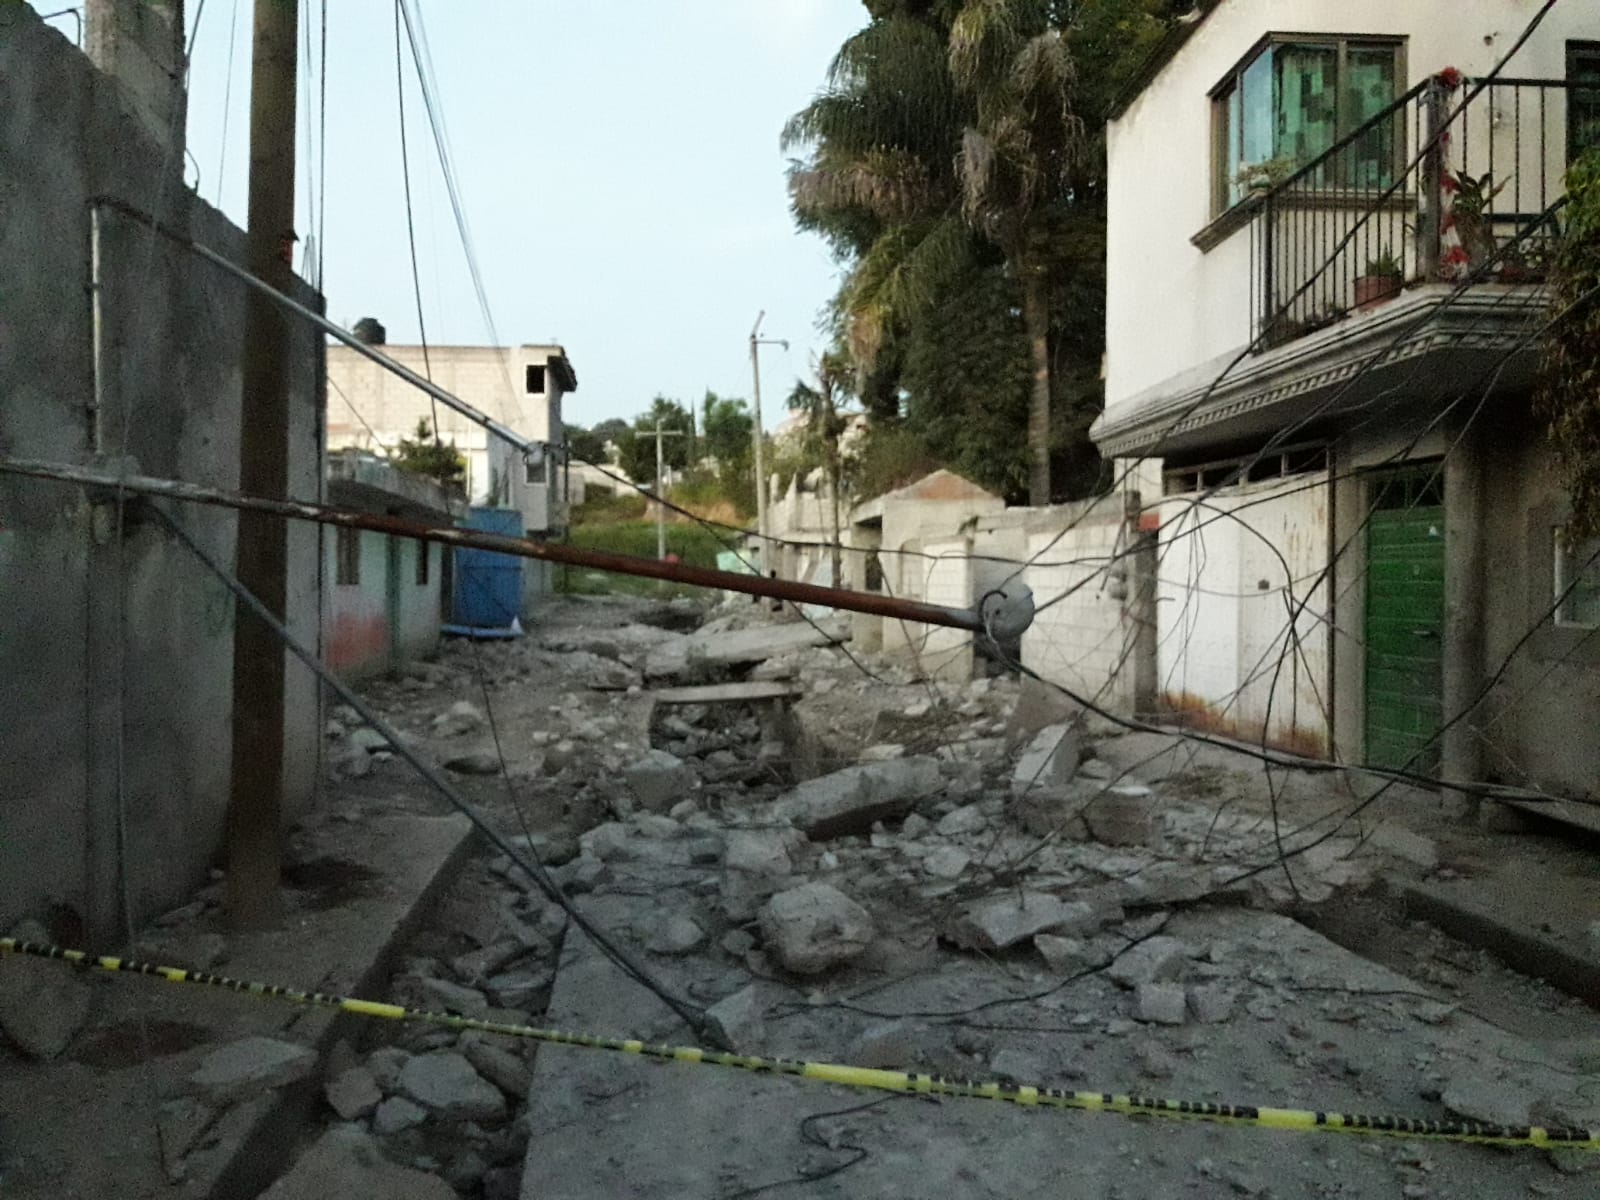 Ninguna familia ha aceptado la reubicación tras explosión en Xoxhimehuacan: MBH